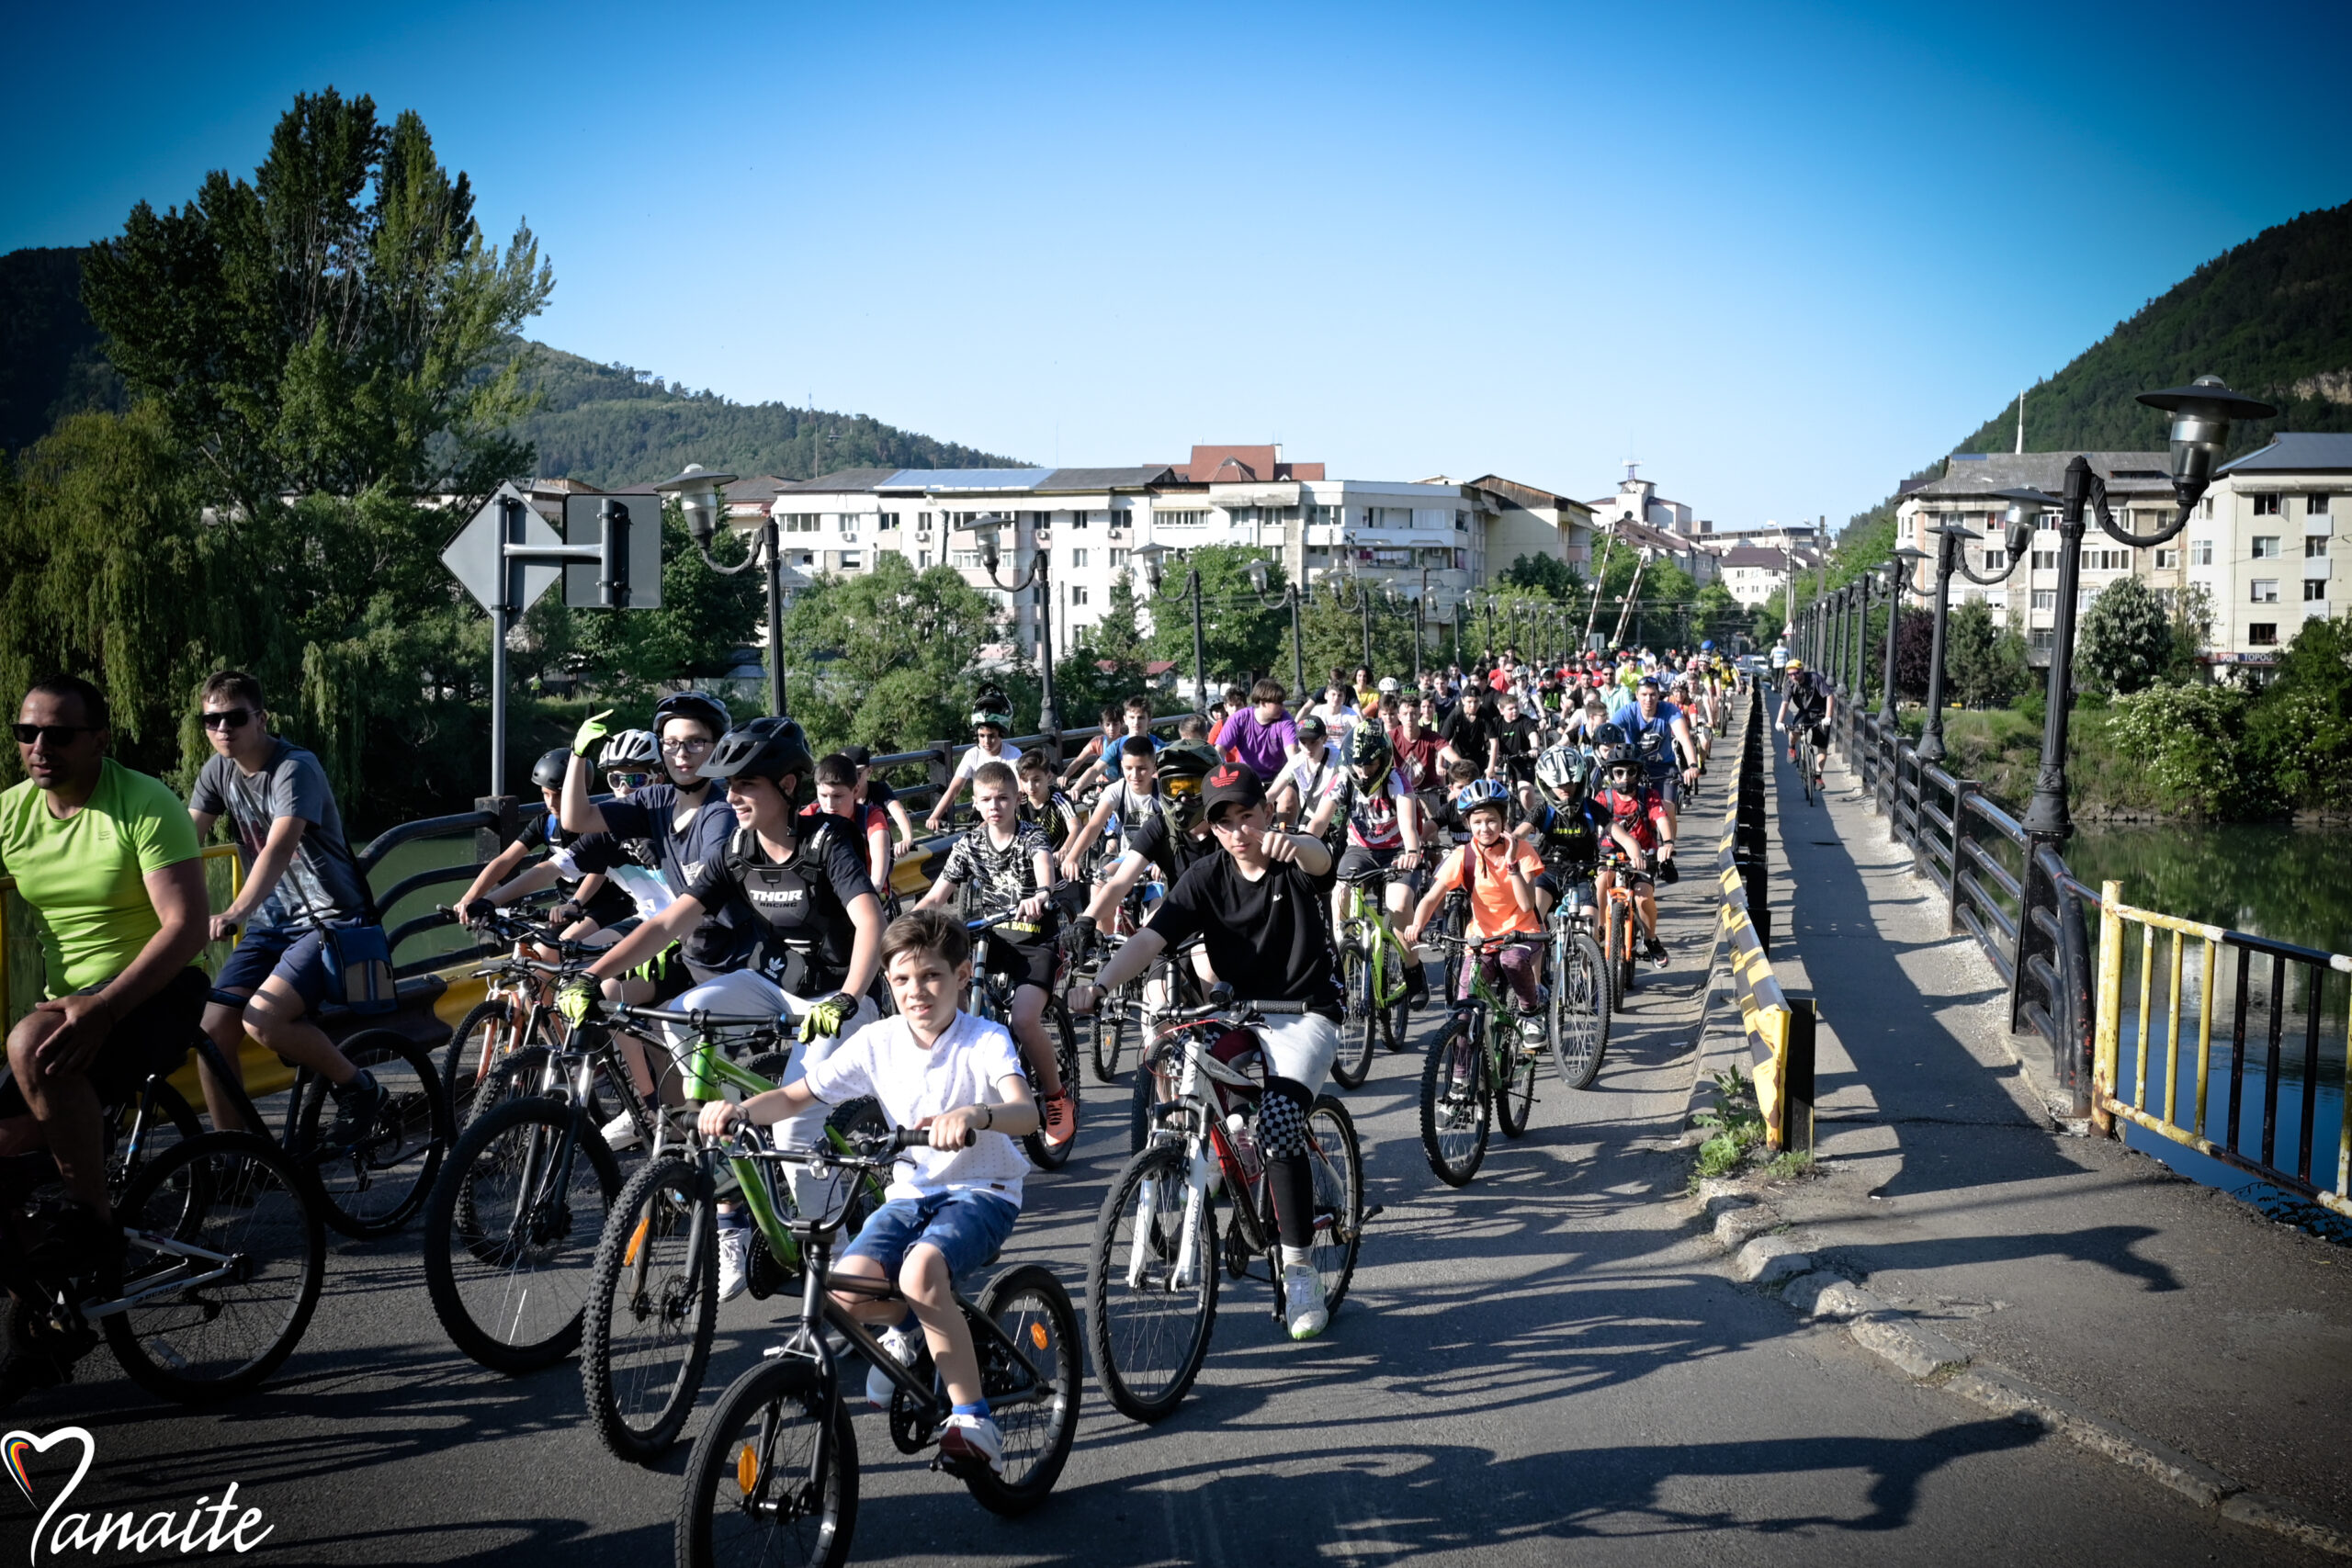 Vineri – 12 august, Folk pe Biciclete la Piatra-Neamţ! Bicicleală şi concert în aer liber cu intrare gratuită!